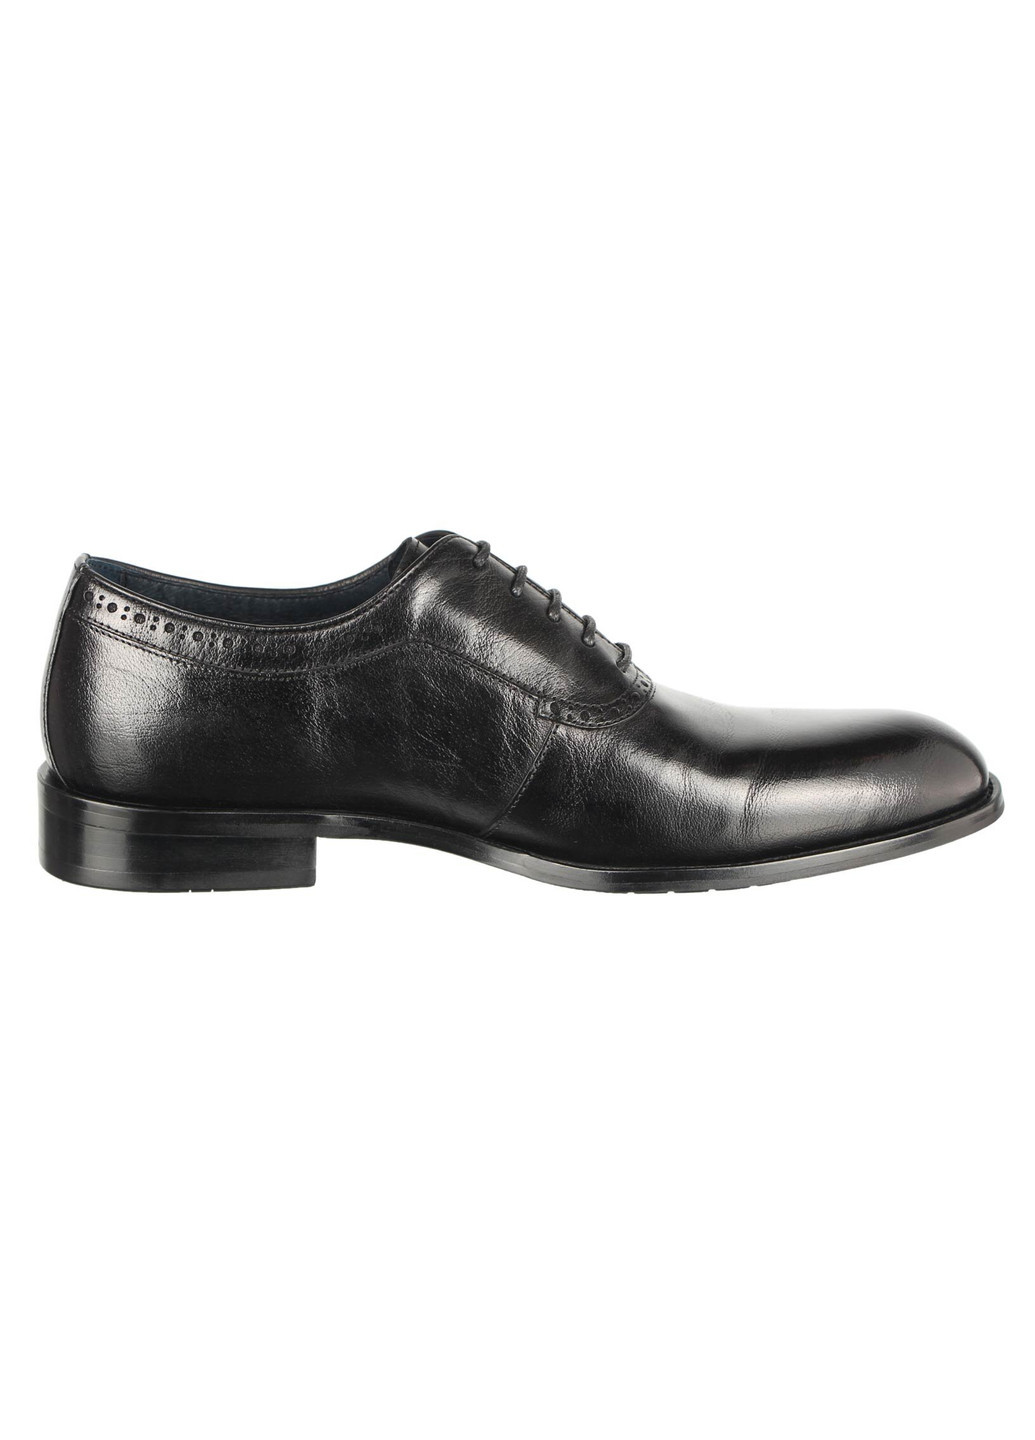 Черные мужские классические туфли 196465 Buts на шнурках